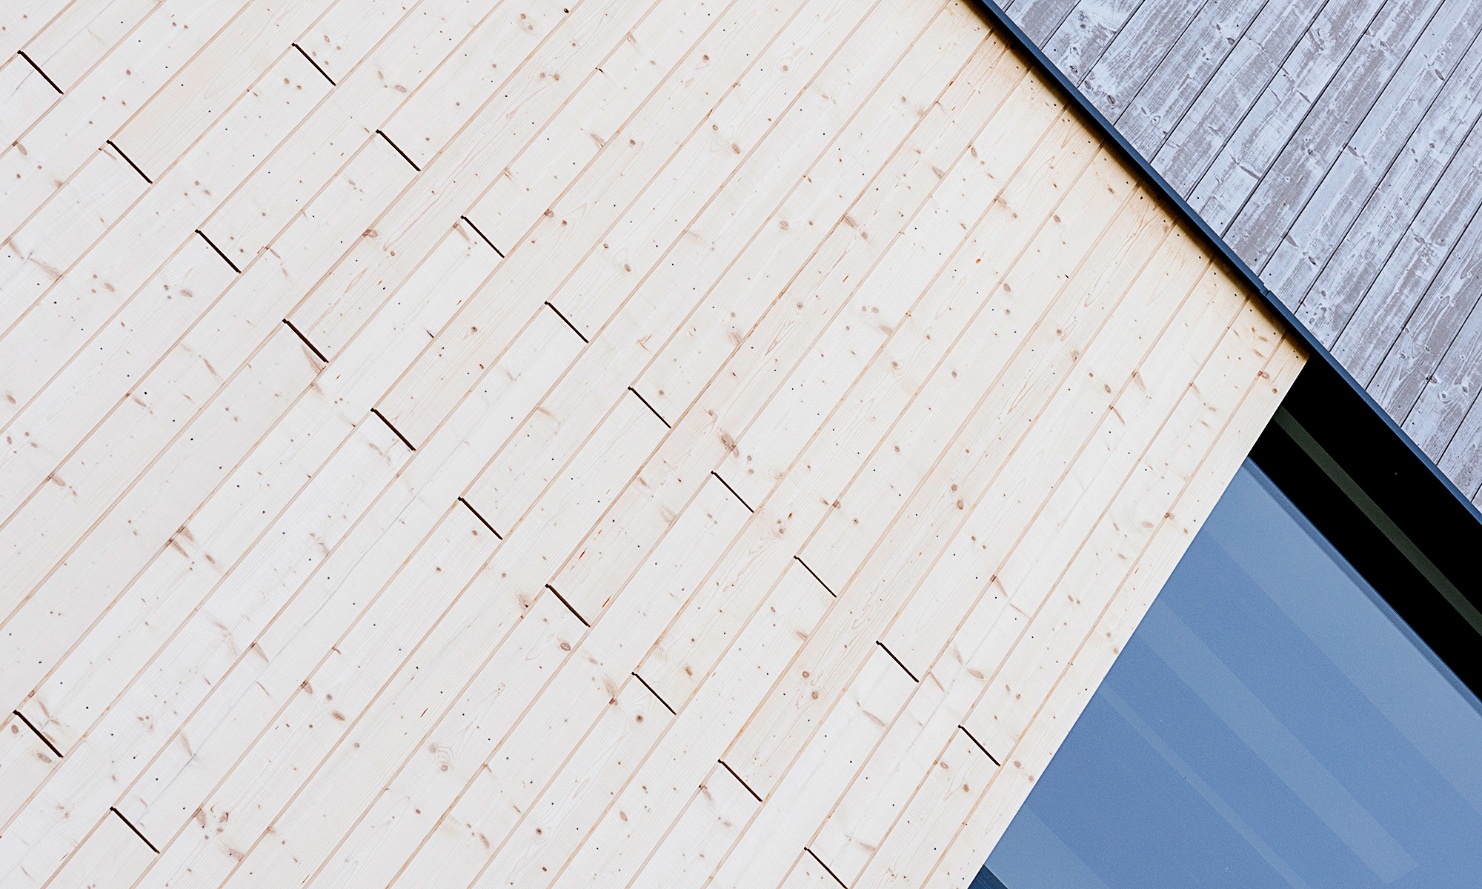 Detailansicht der Fassade Energiezentrale mit den unterschiedlichen Fassadenbehandlungen im Direktvegleich; vorvergrautes und Uvood-behandeltes Holz.